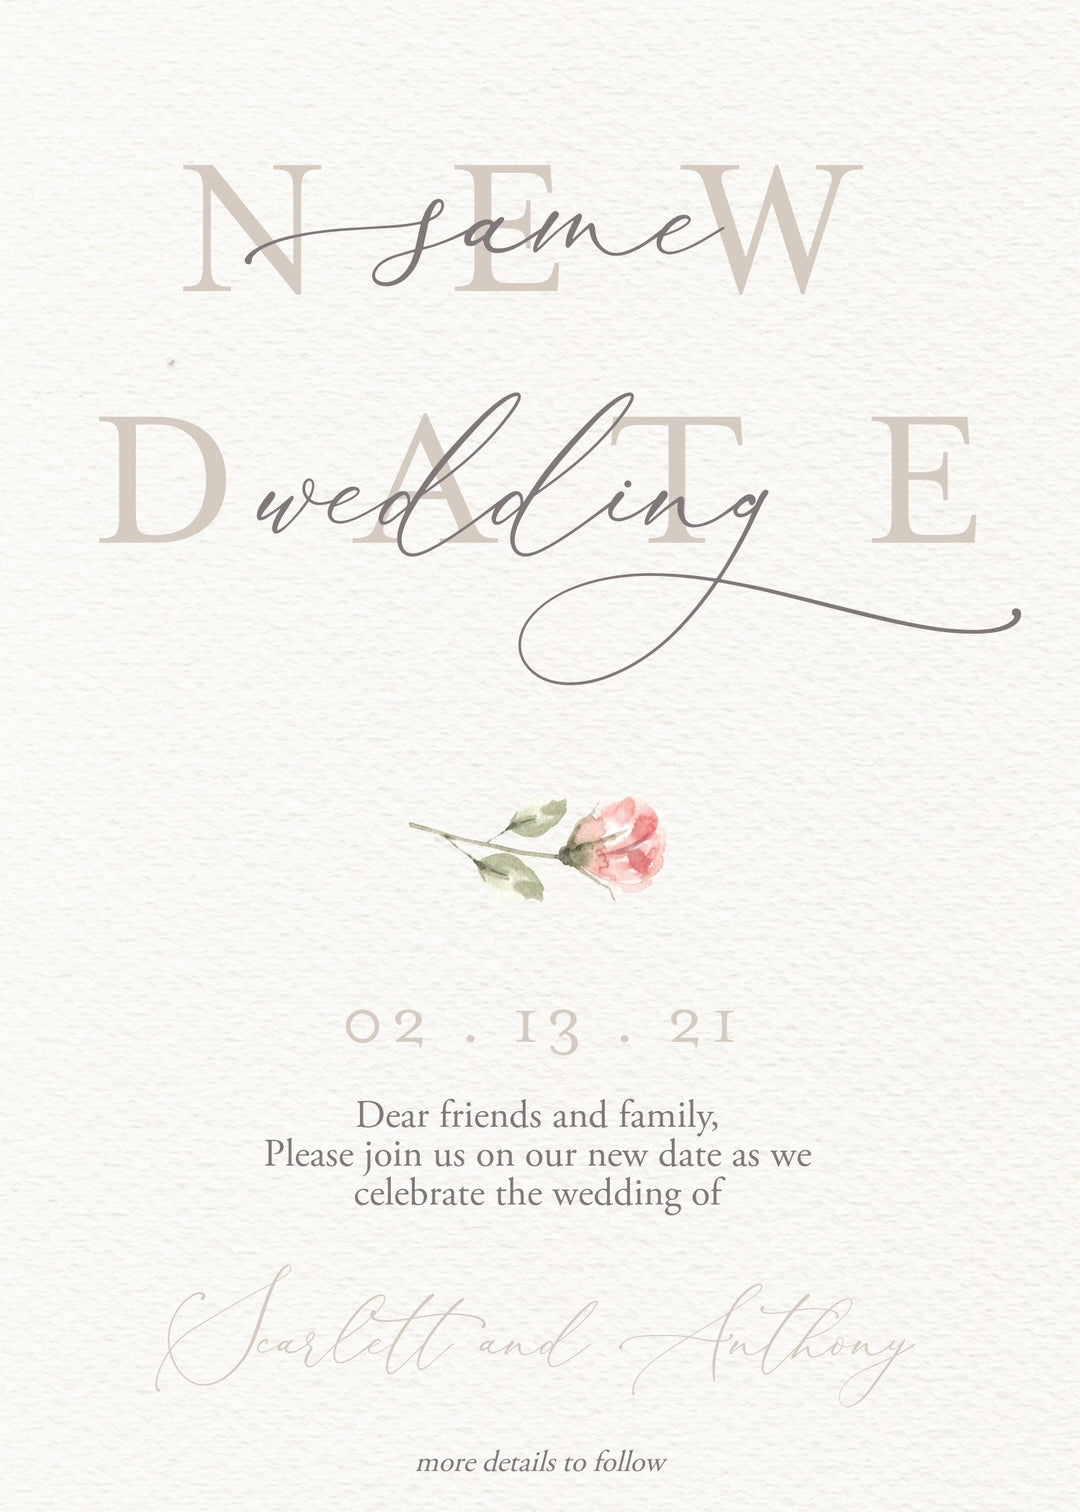 Wedding Reschedule Announcement - Wedding Postponement Announcement - Wedding Change the Date Card - Save the New Date Invitation - Postpone